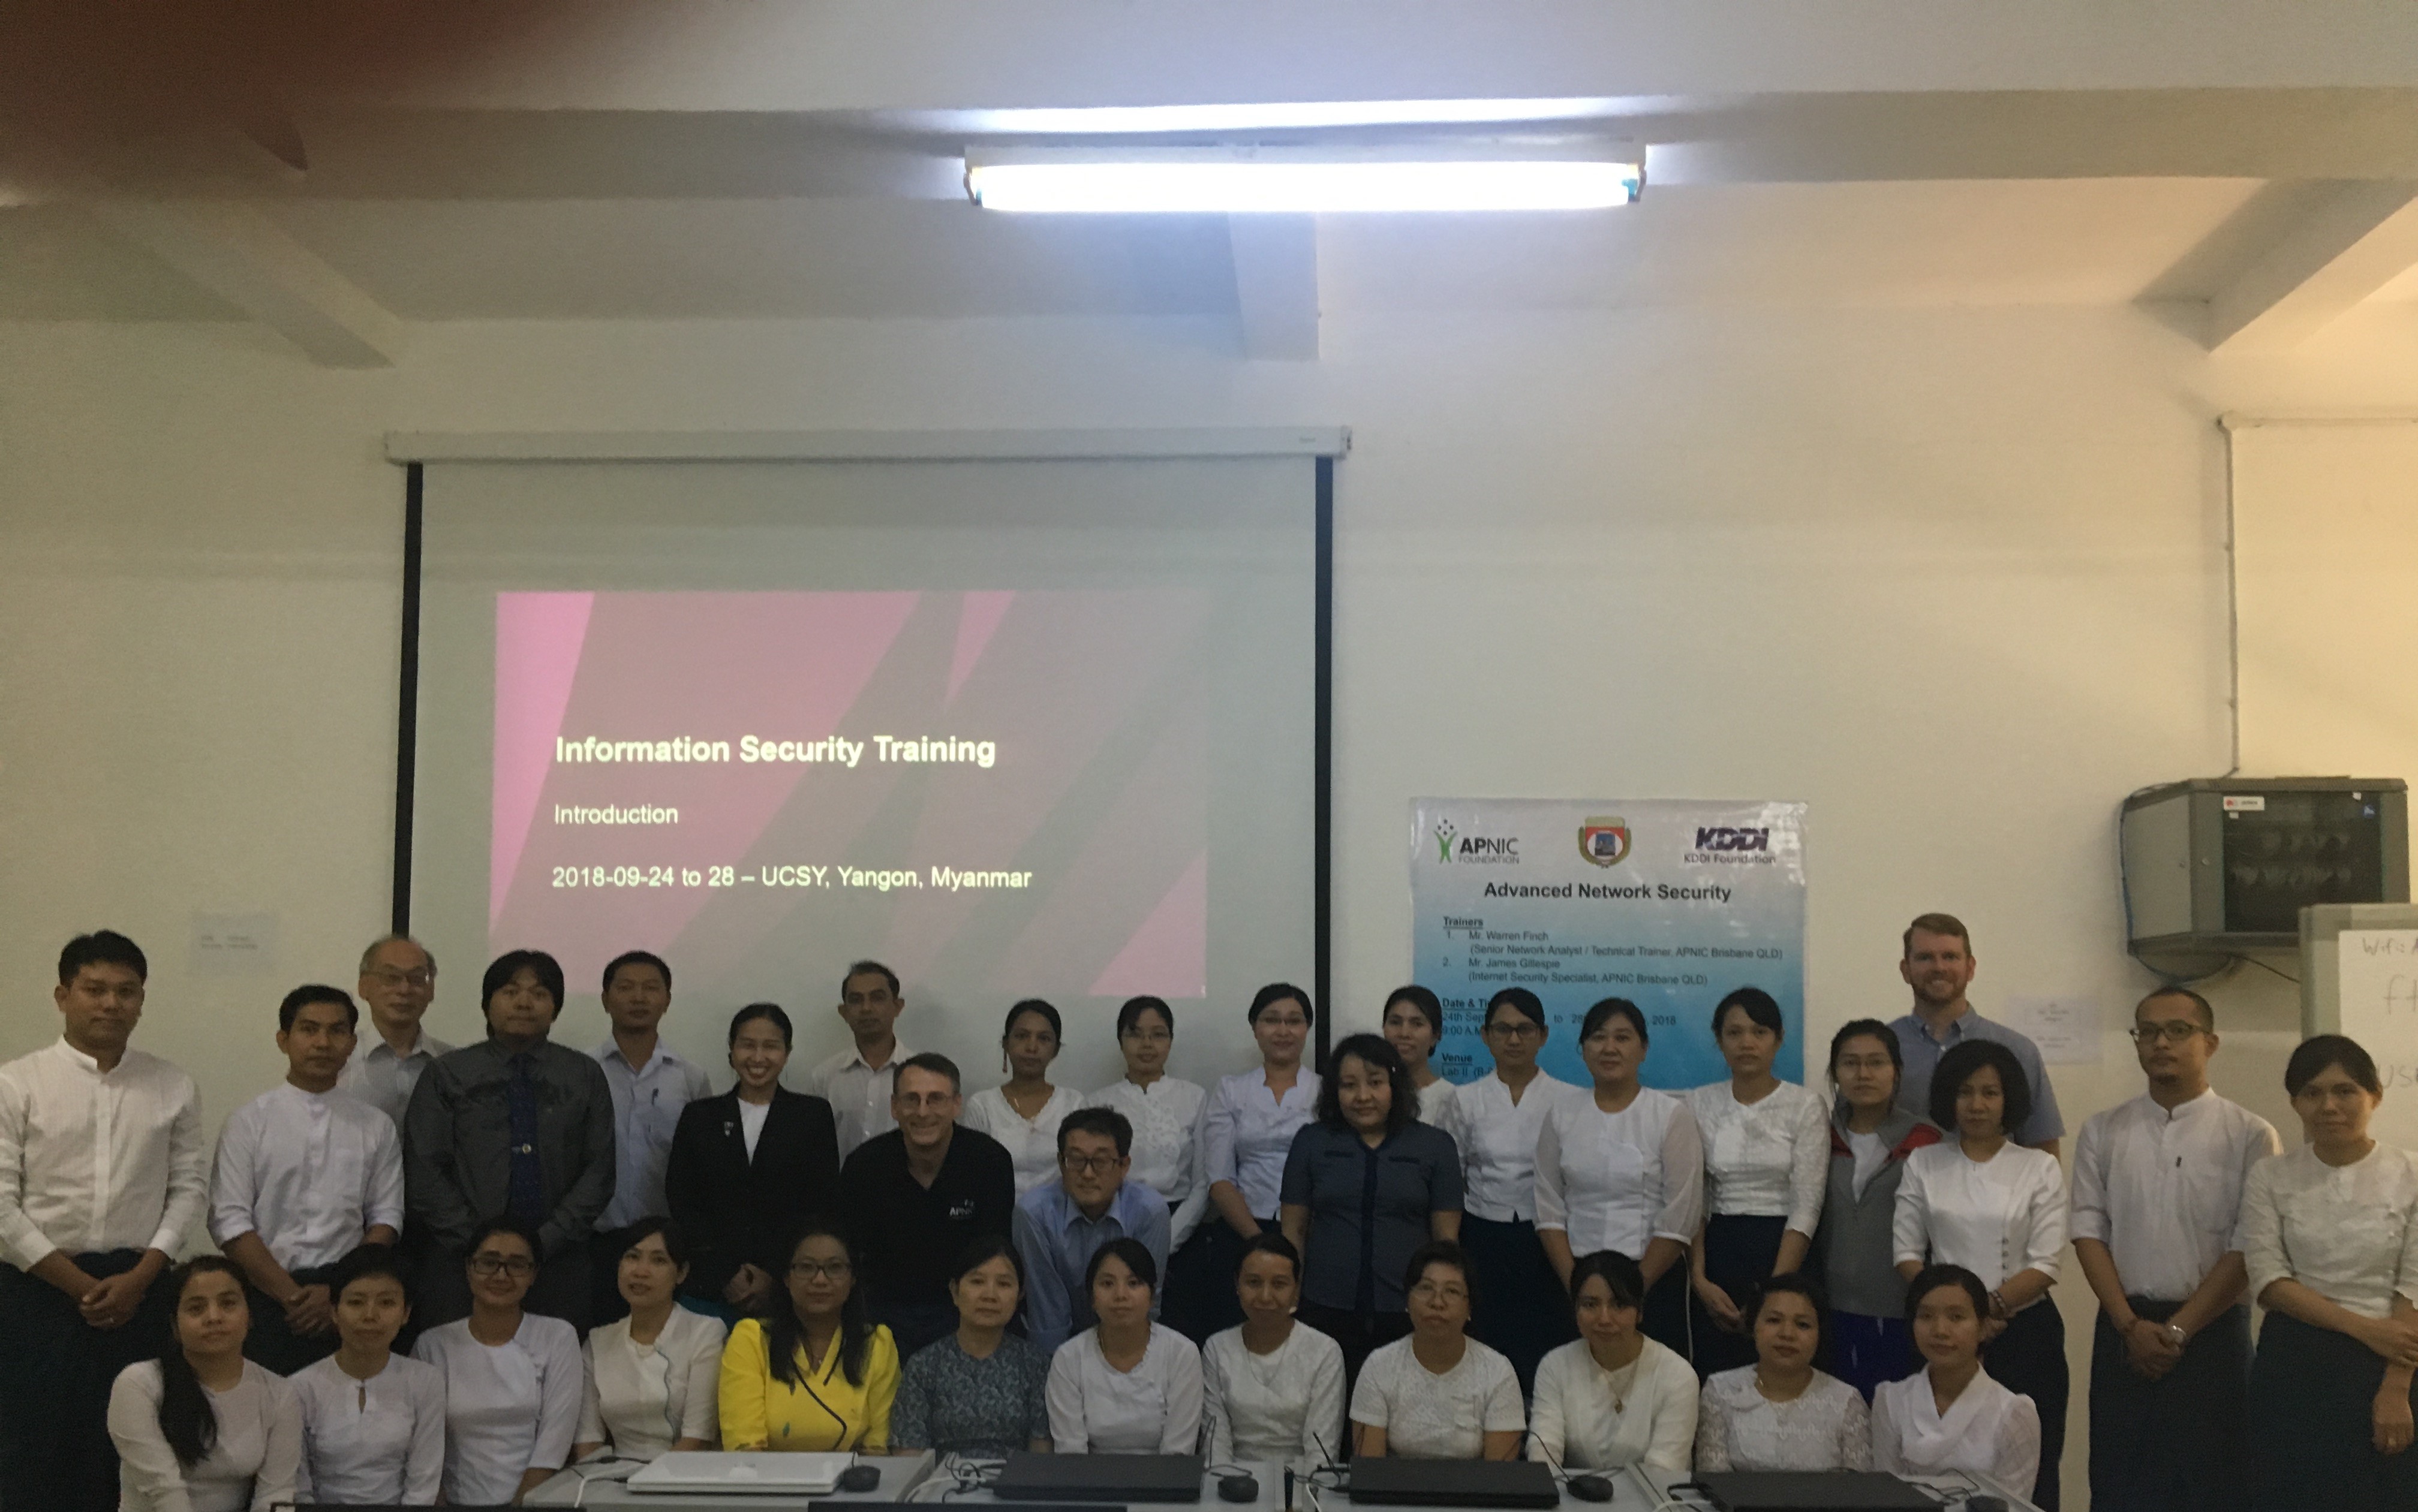 ミャンマーでのAPNIC財団との共催によるインターネット技術研修の開催について